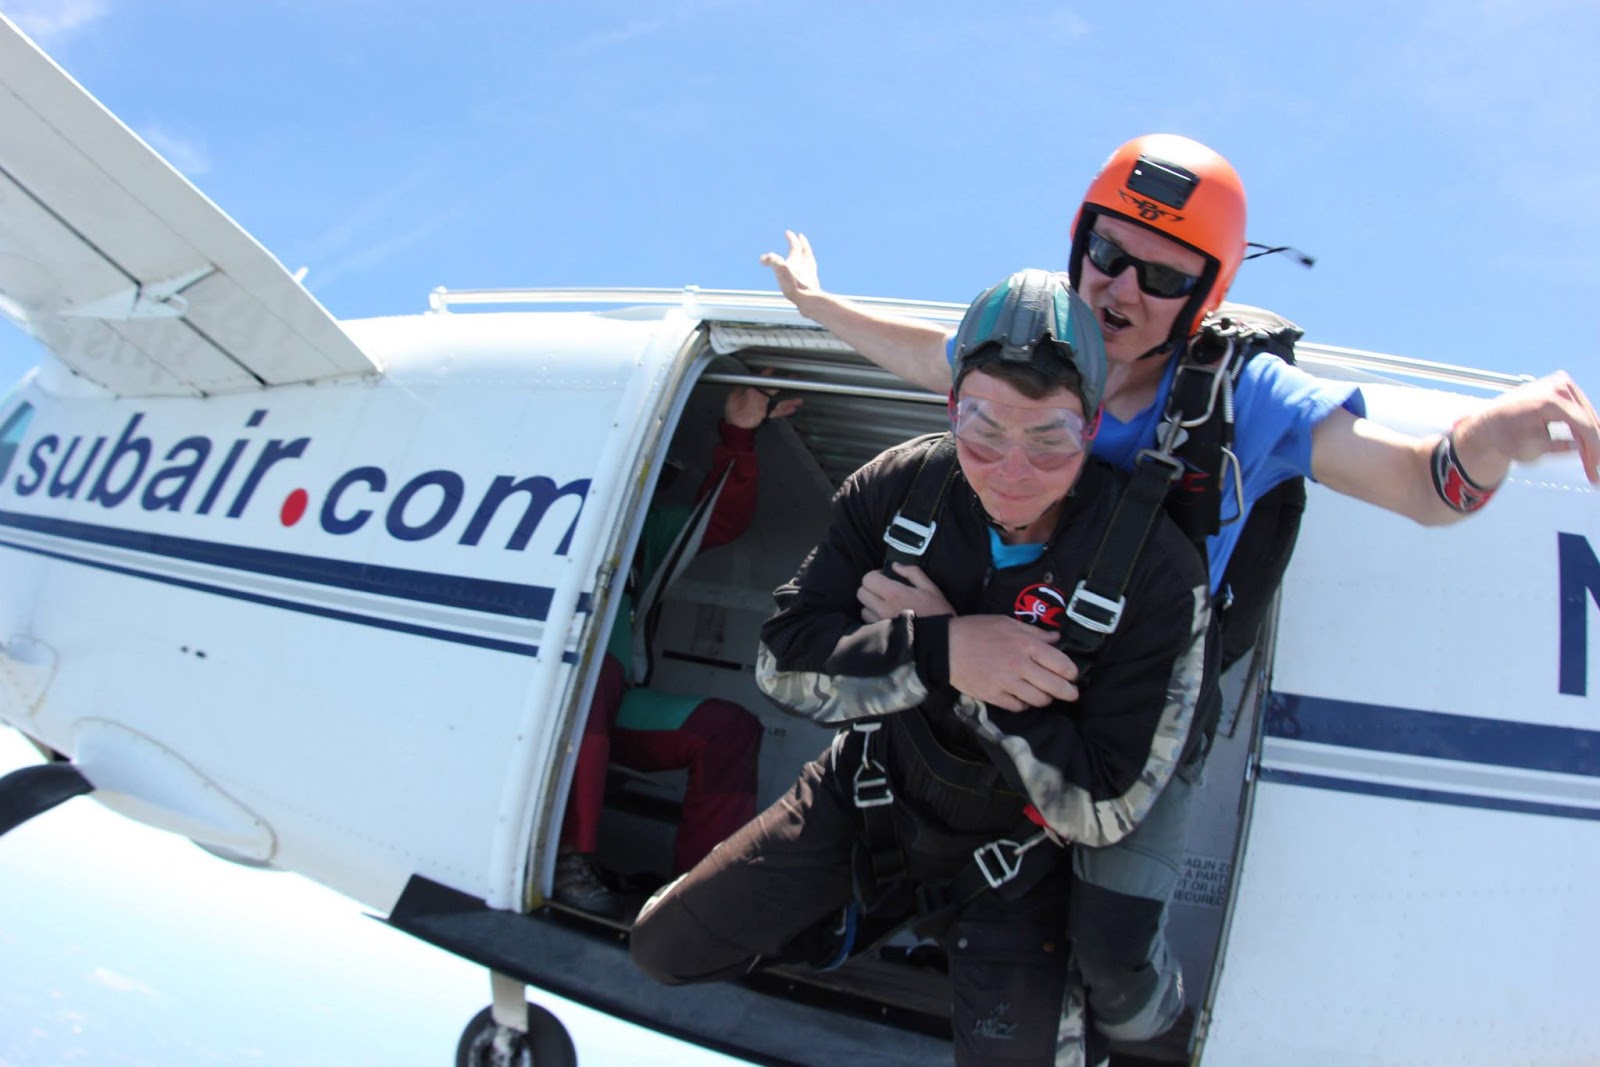 skydiving-freefall-what-is-it-like.jpg